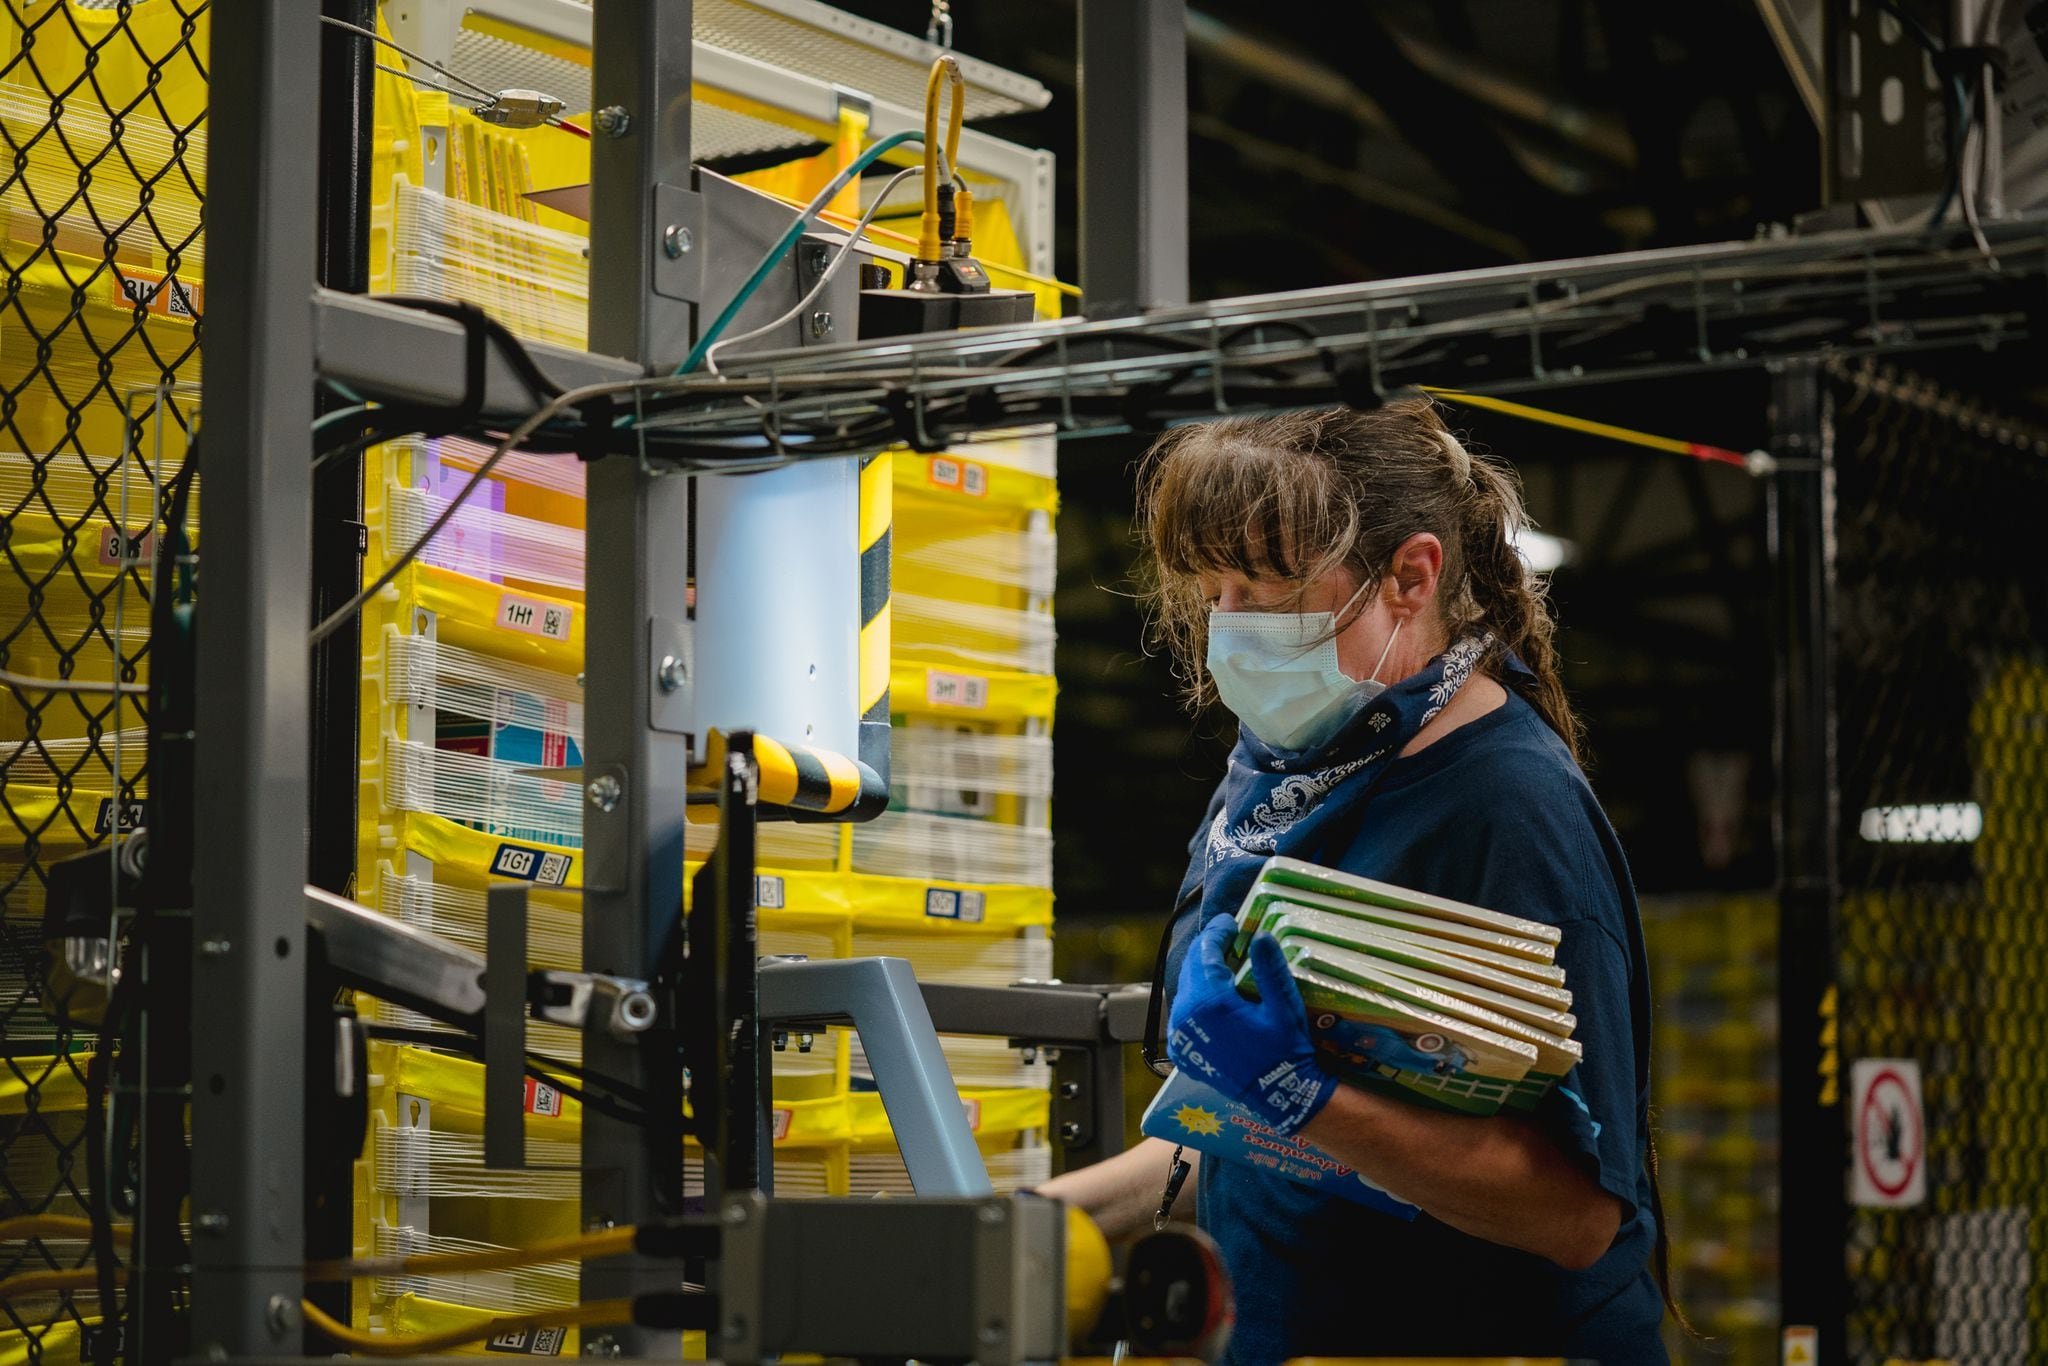 Amazon now employs more than 1 million people